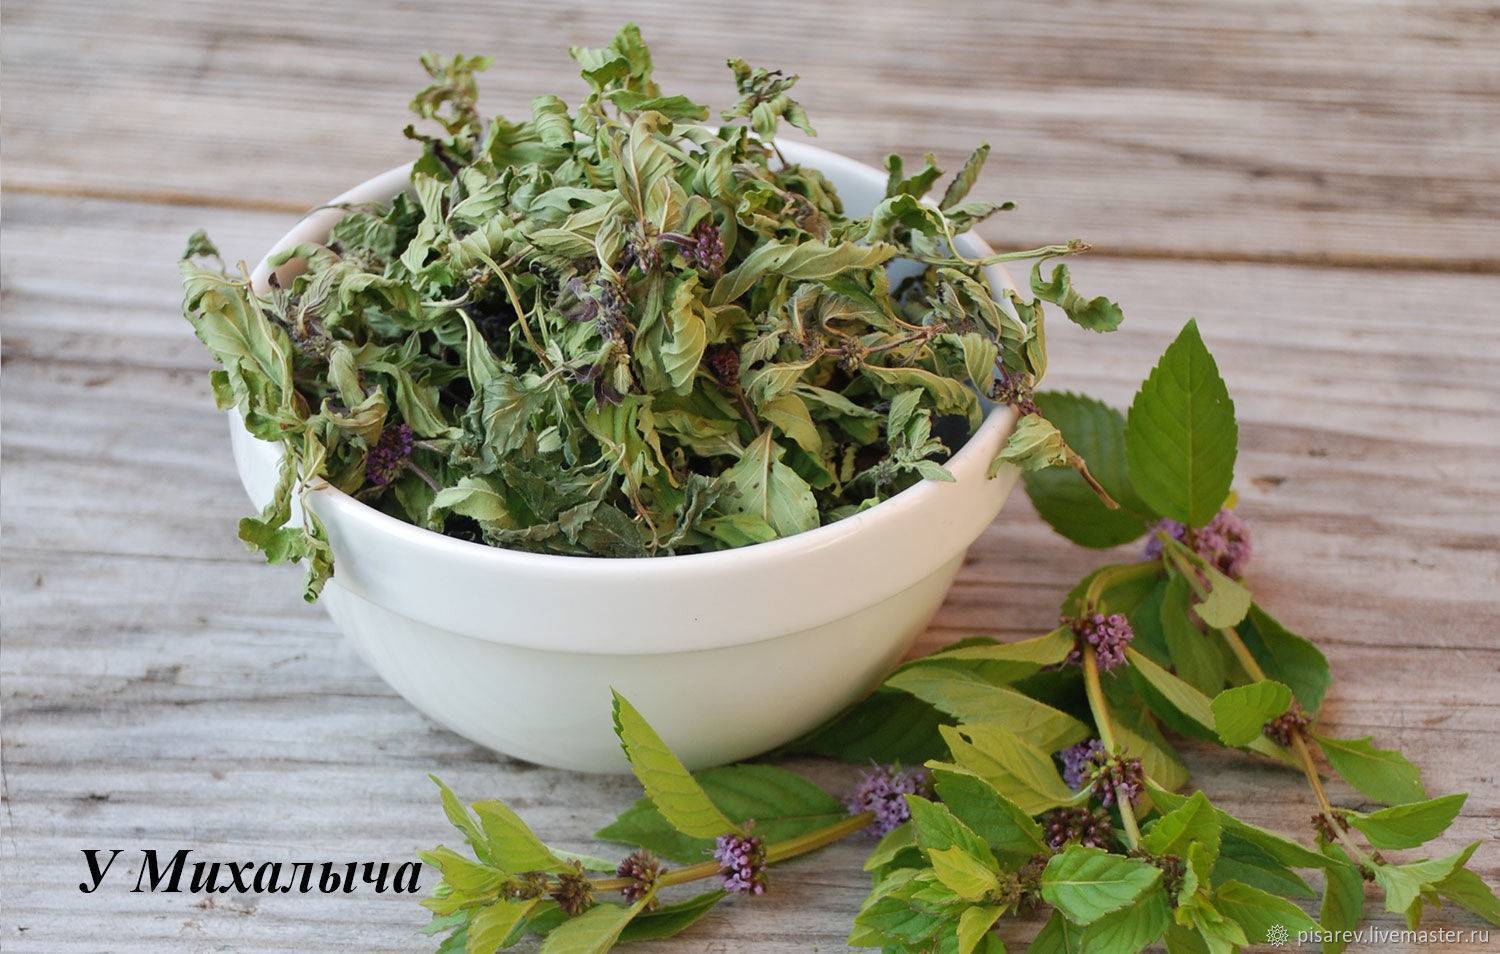 10 вкусных и полезных рецептов травяных чаев